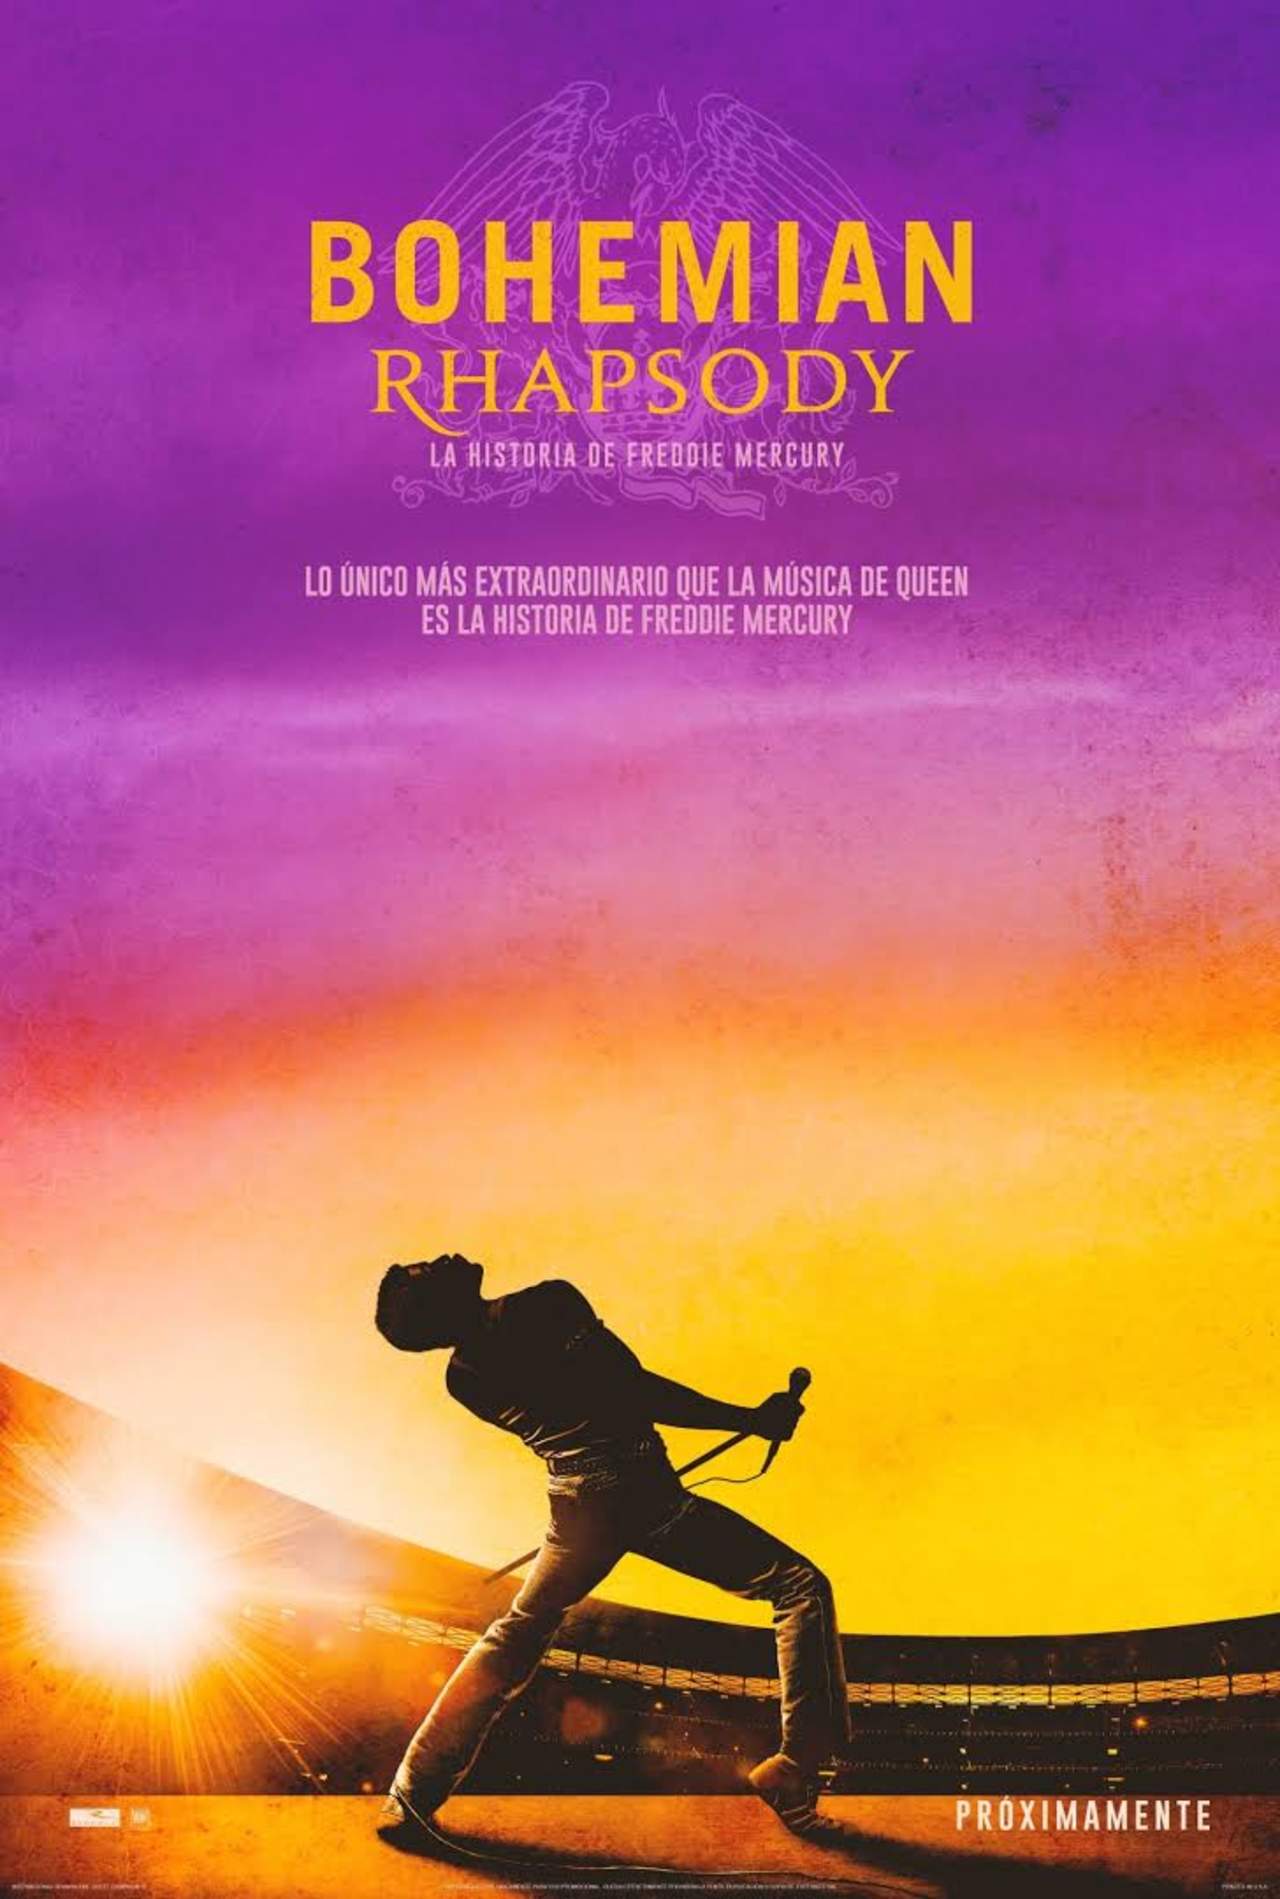 Bohemian Rhapsody. Noticias en tiempo real